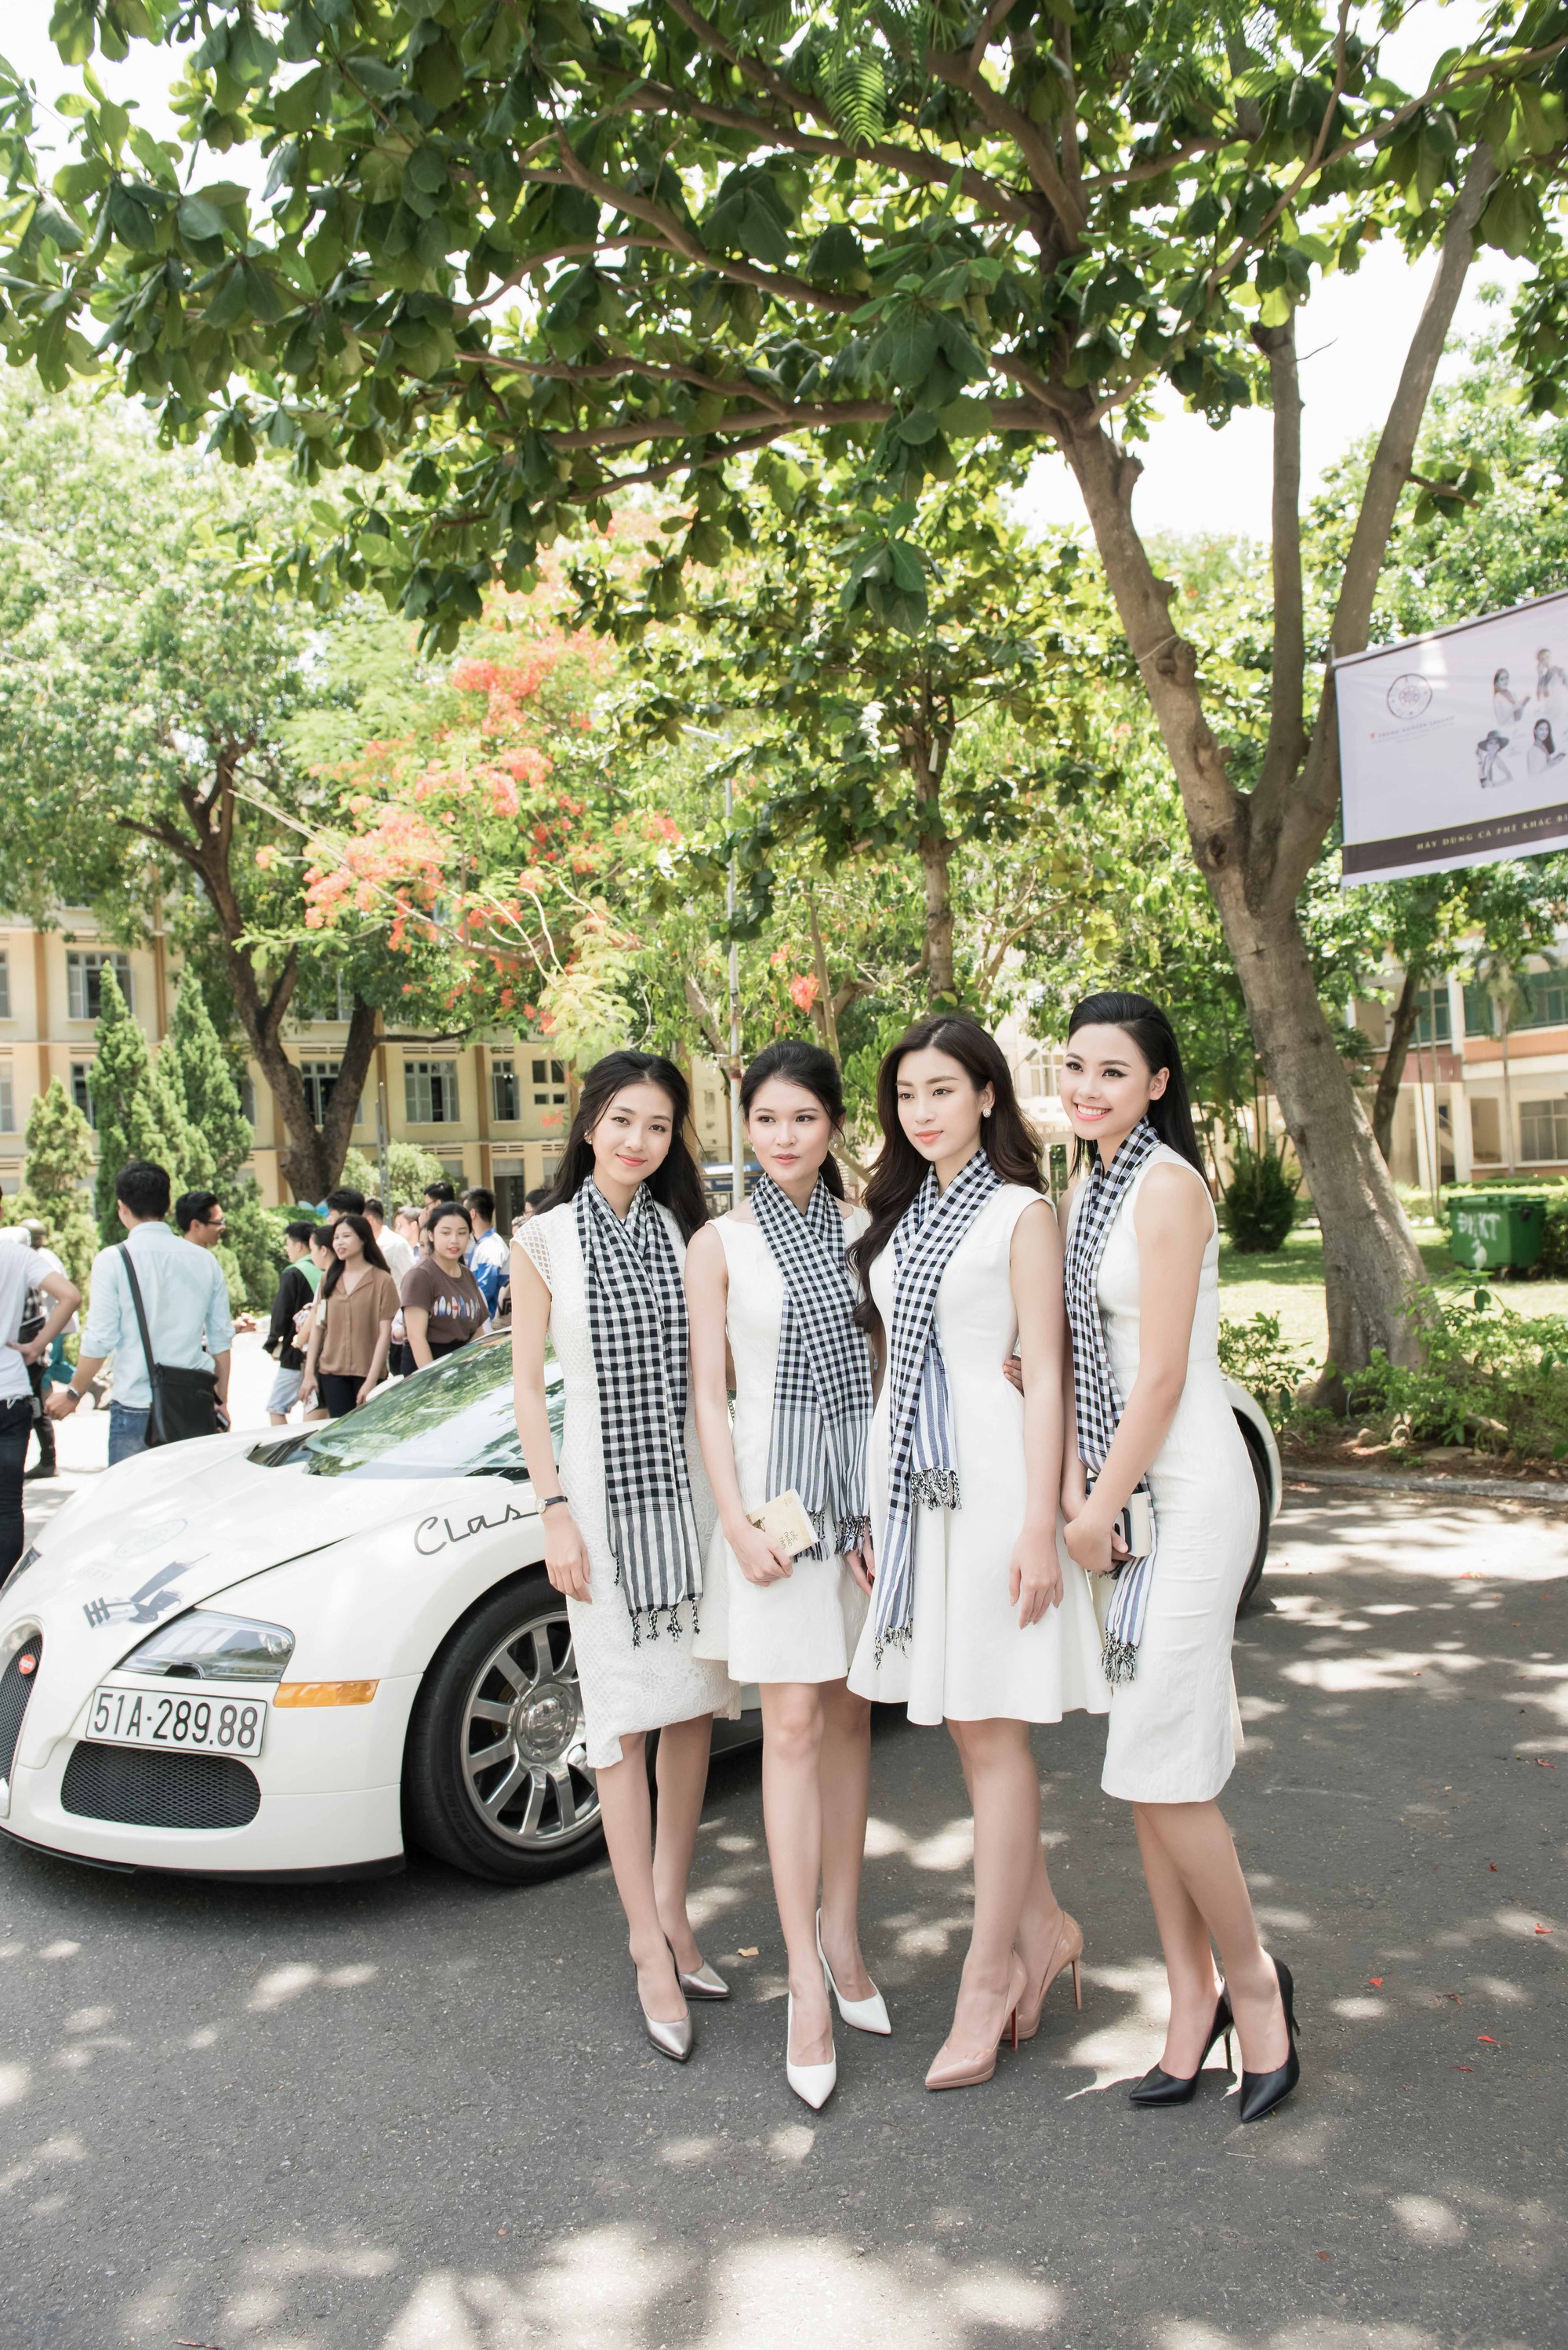 Hoa hậu Đỗ Mỹ Linh khoe dáng cùng Á hậu Thùy Dung bên siêu xe 50 tỷ đồng - Ảnh 2.